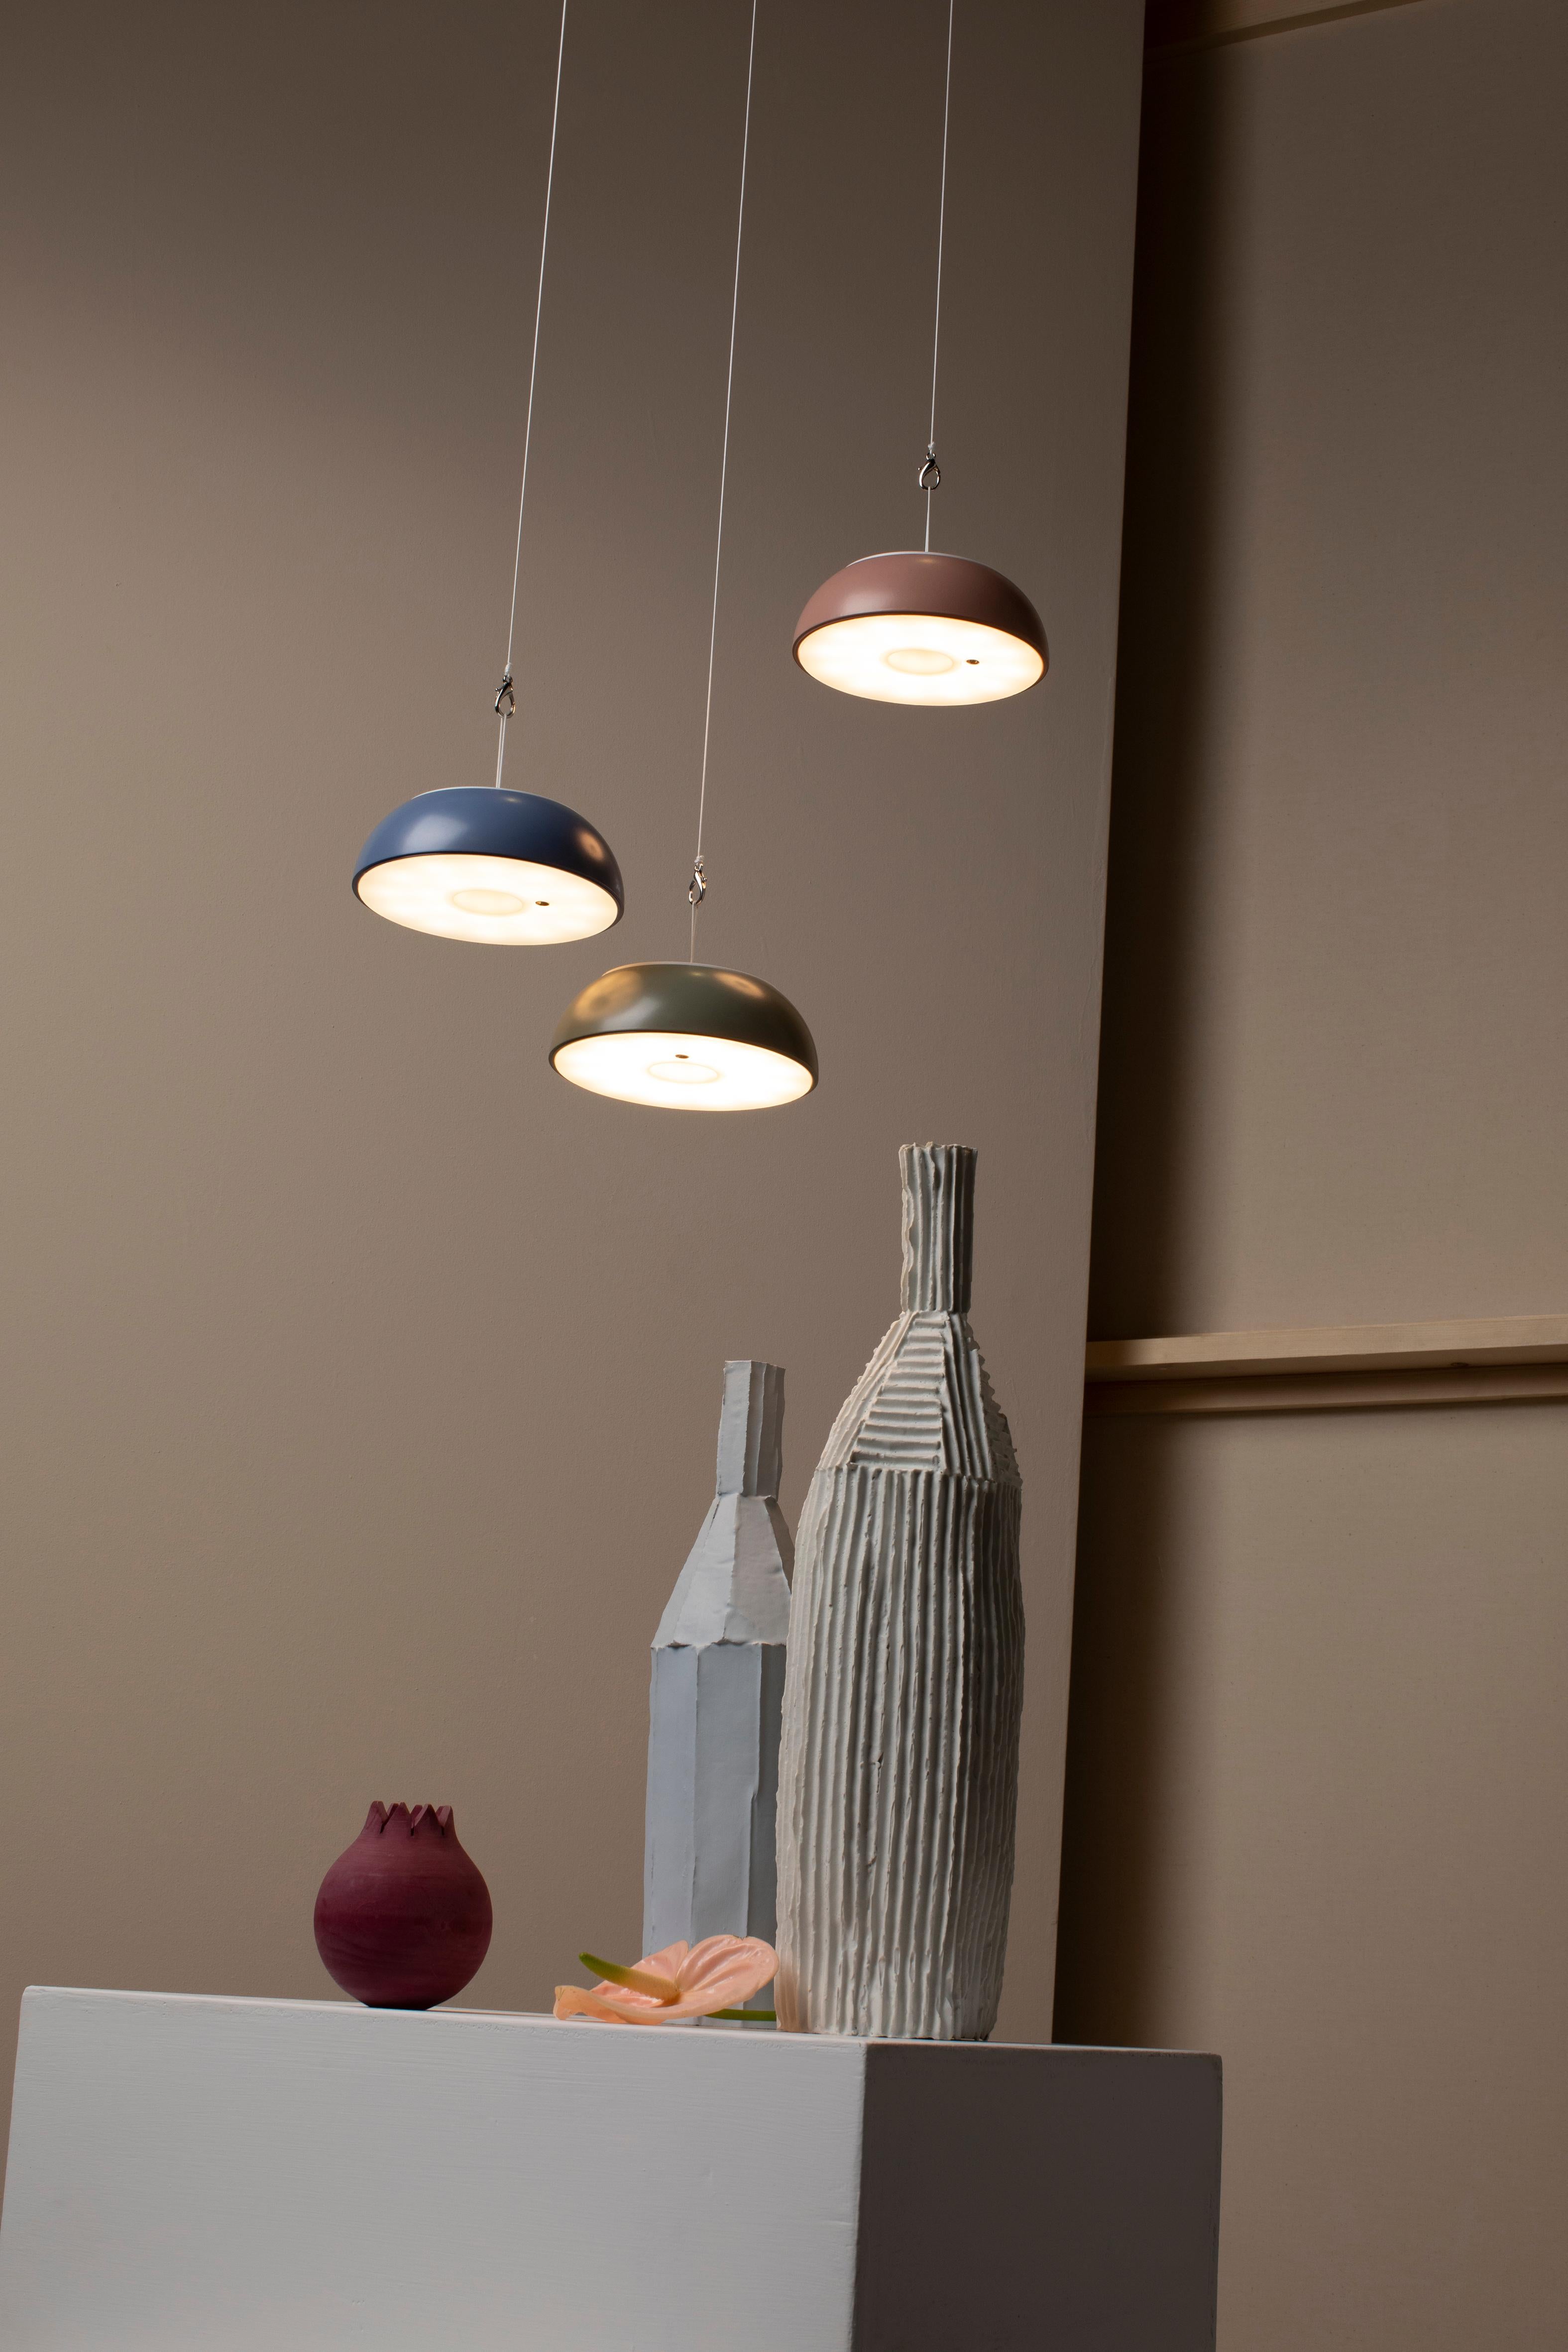 Axolight Schwebende Hängeleuchte aus schwarzem Aluminium von Mario Alessiani

Aus dem Erfindungsreichtum von Axolight und der Kreativität des Designers Mario Alessiani entstand Float, eine multifunktionale und tragbare Leuchte, die sowohl im Freien